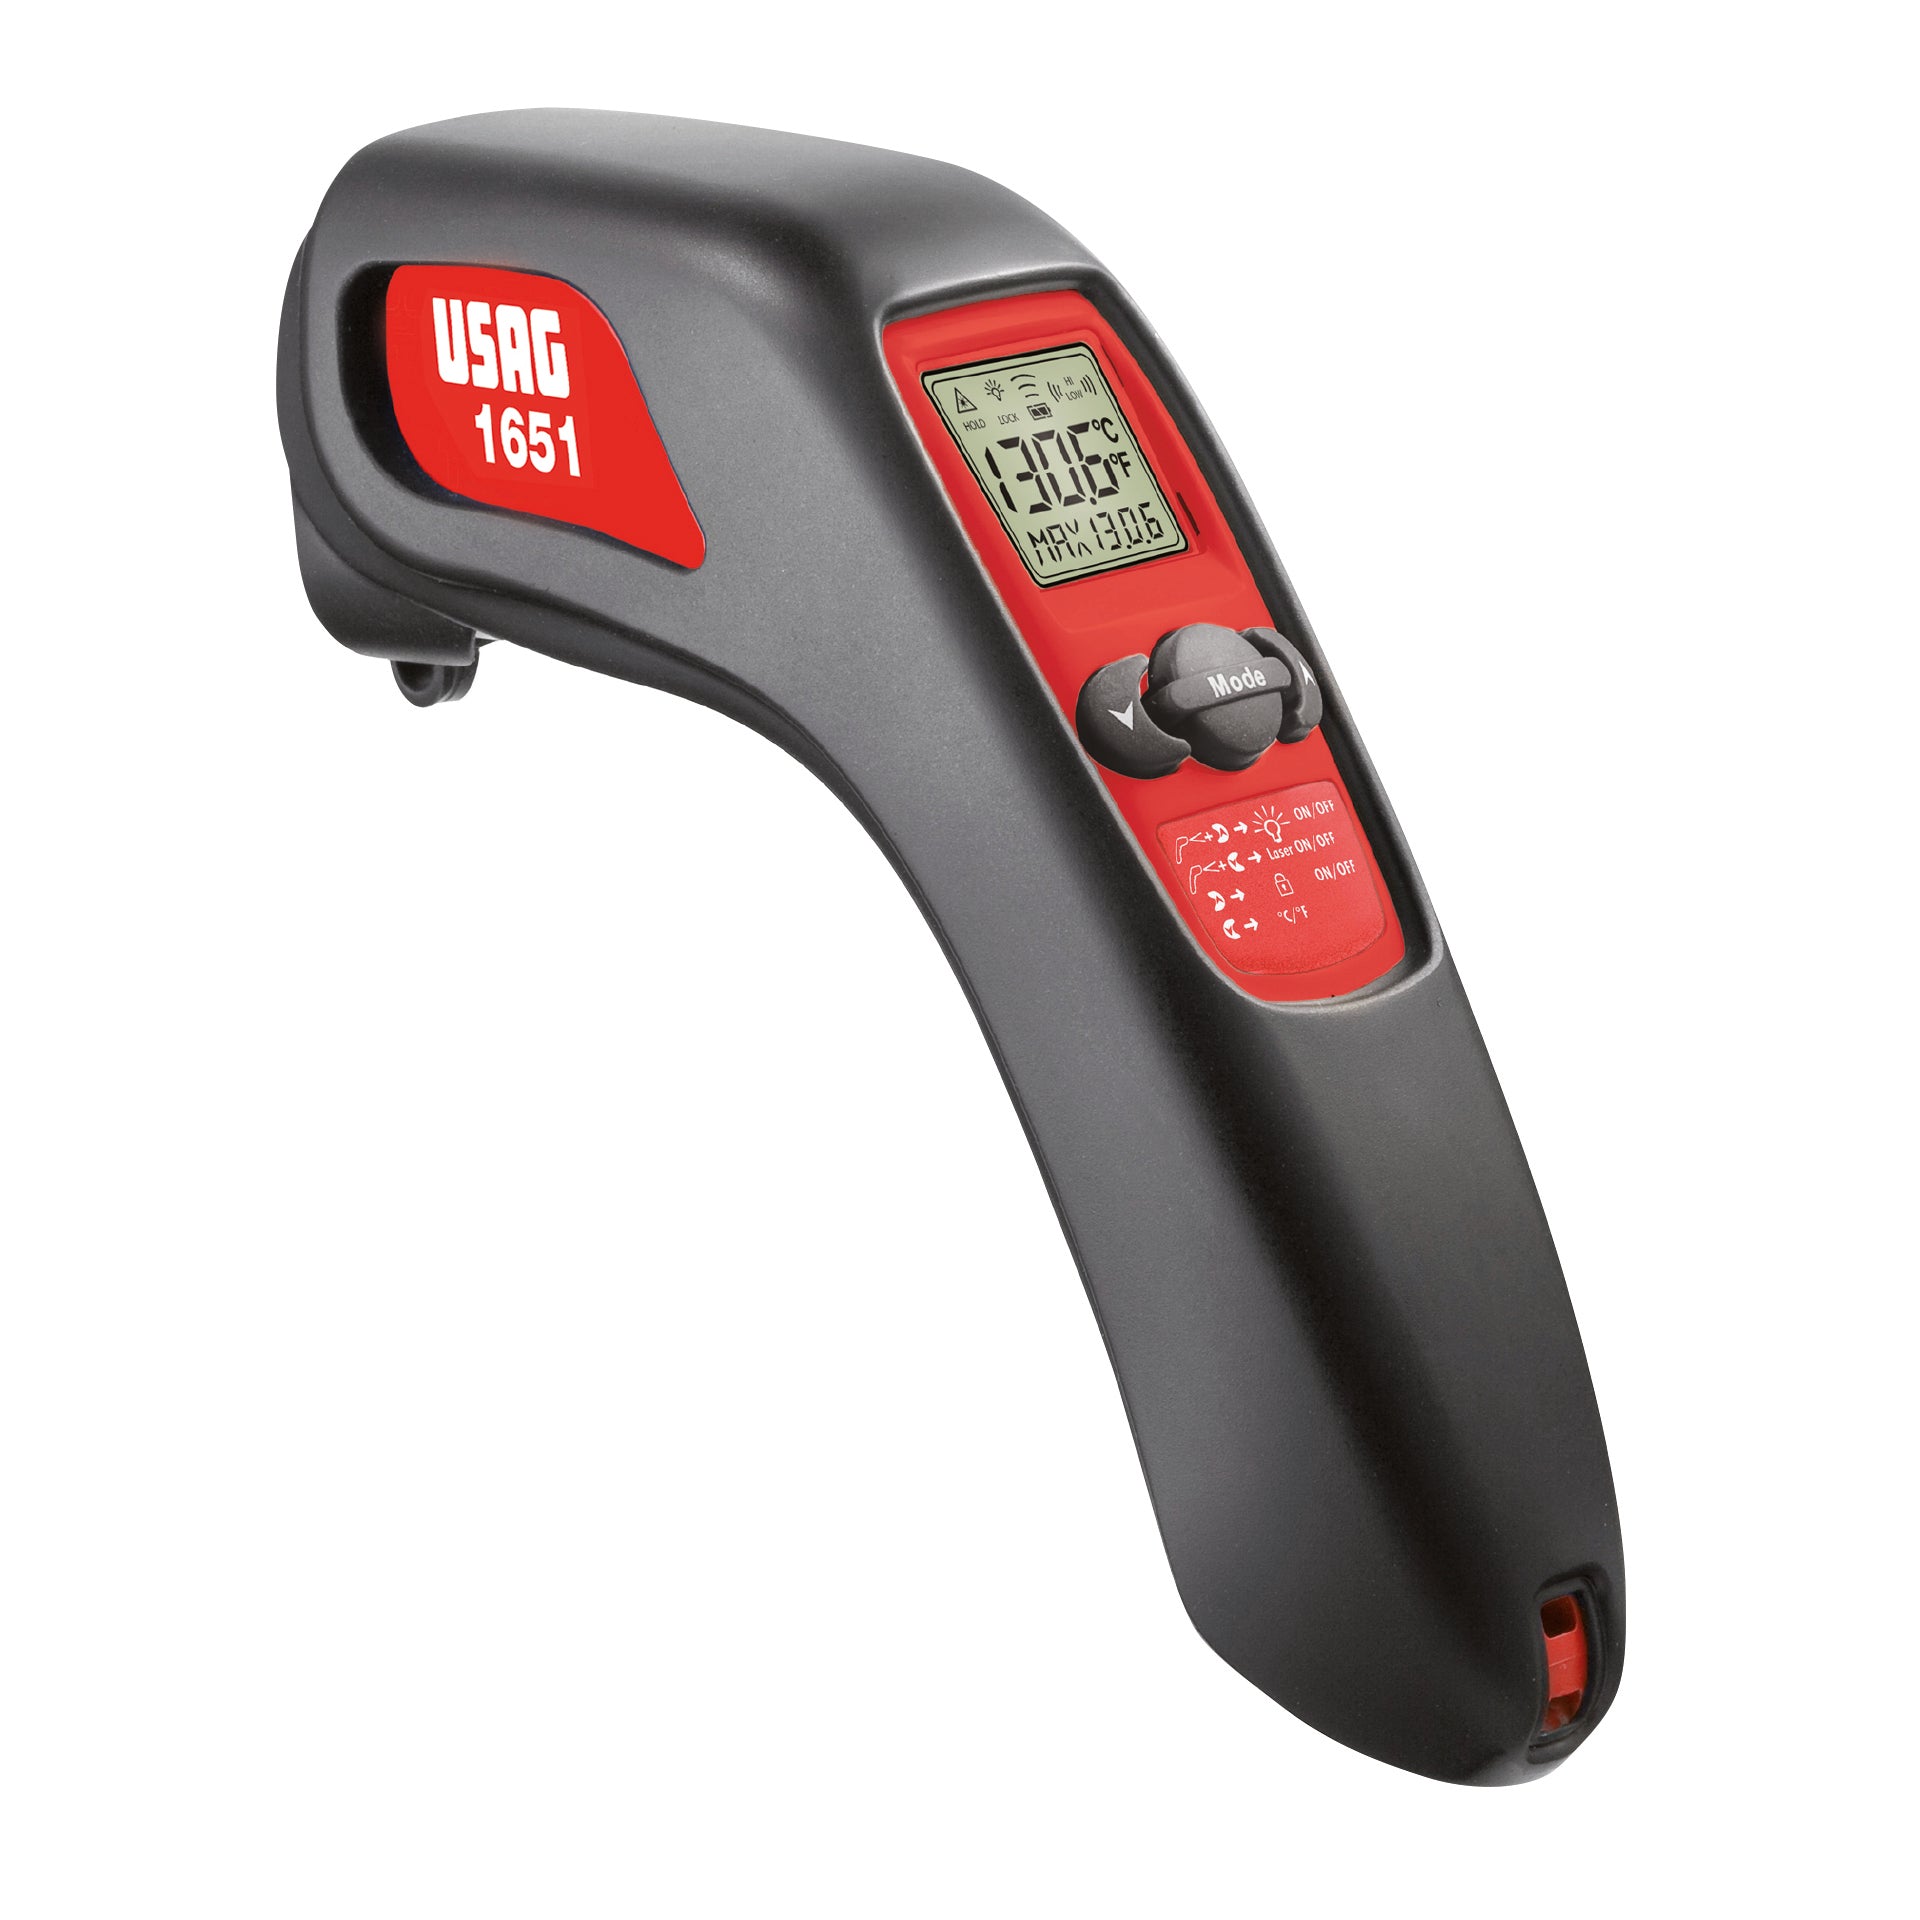 1651 - Termometro digitale ad infrarossi